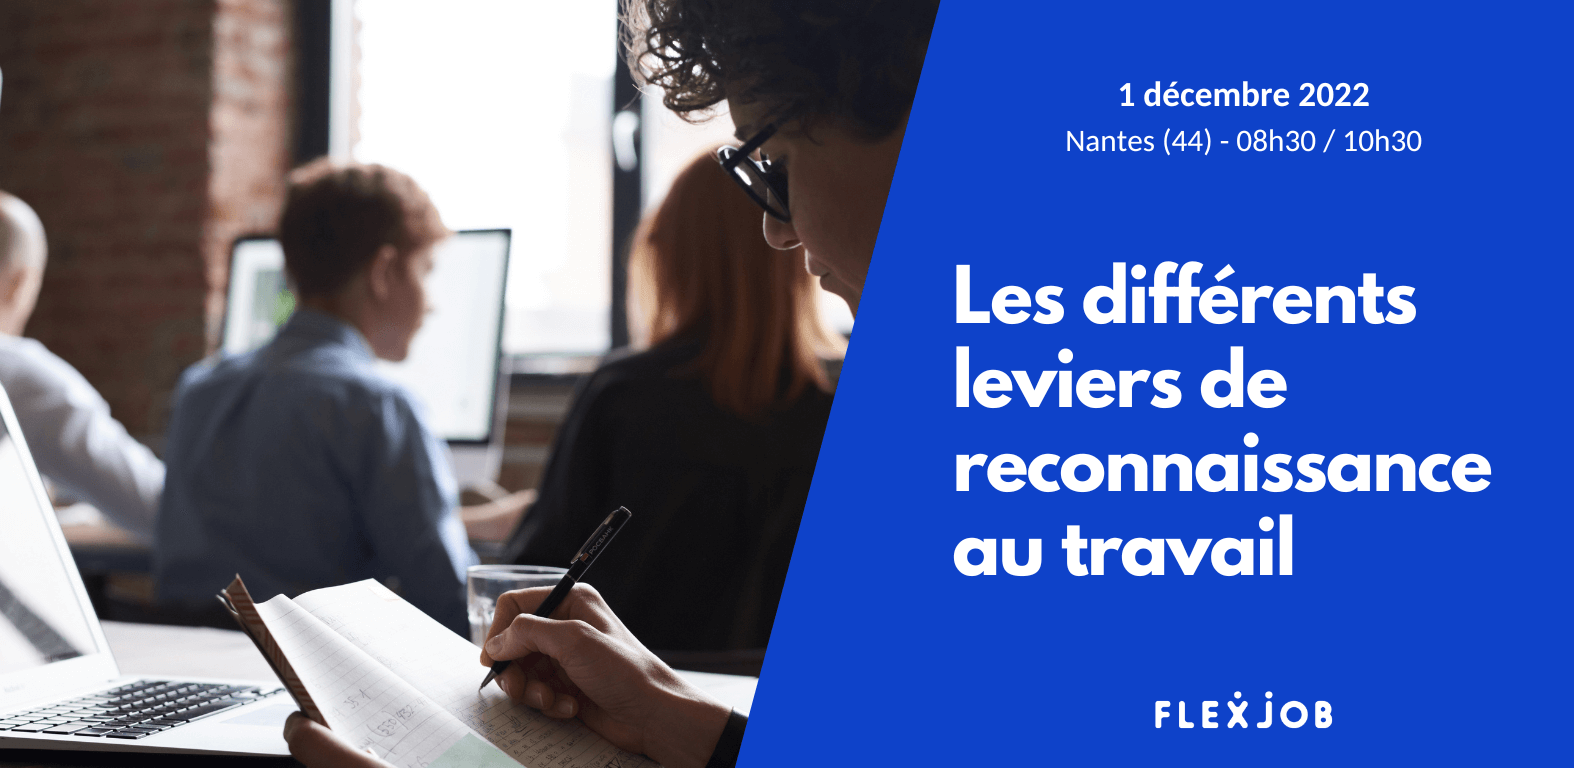 Venez prendre un temps d'inspiration sur les différentes formes de reconnaissance au travail lors de notre prochain événement à Nantes.